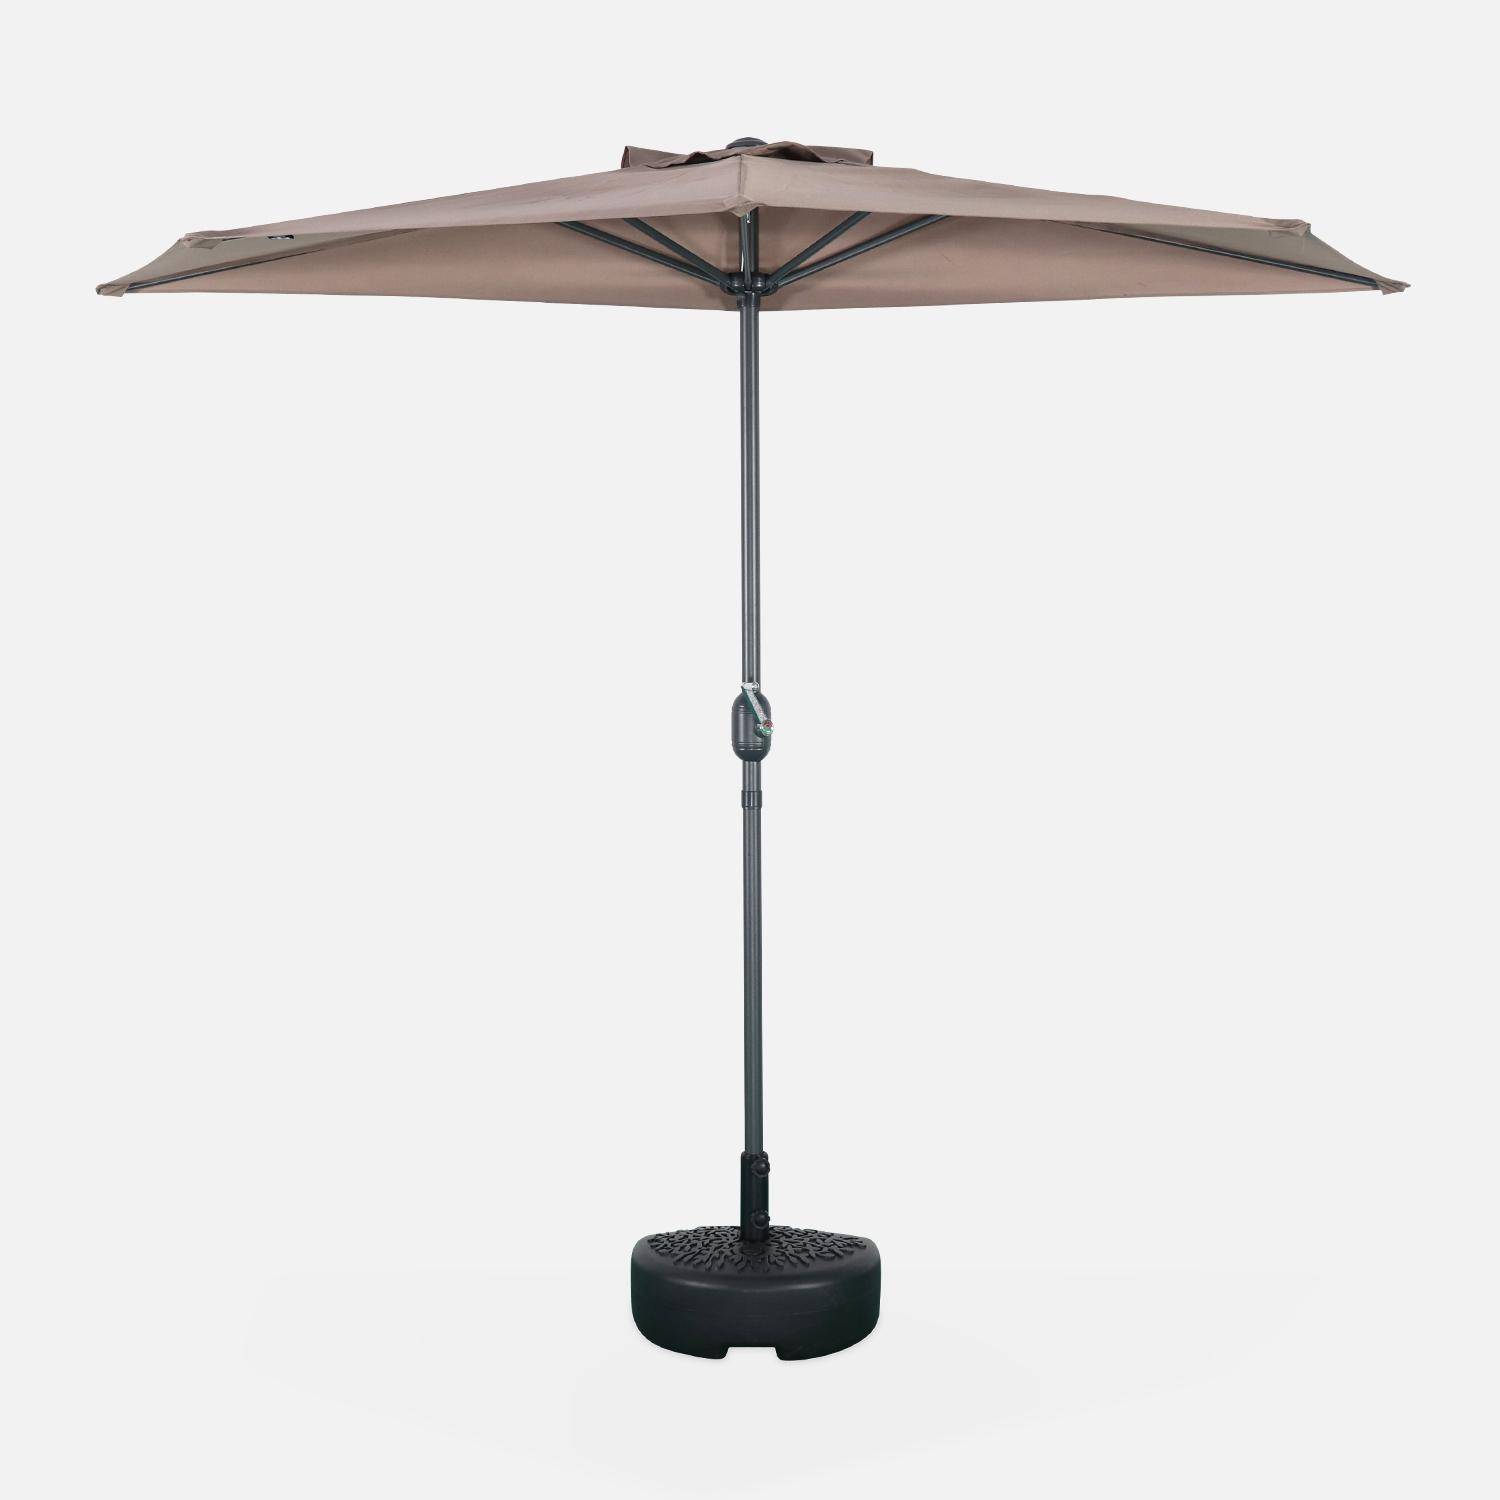 Ombrellone da balcone Ø250cm - CALVI - Mezzo ombrellone dritto, palo in alluminio con manovella, telo bruno/talpa Photo2